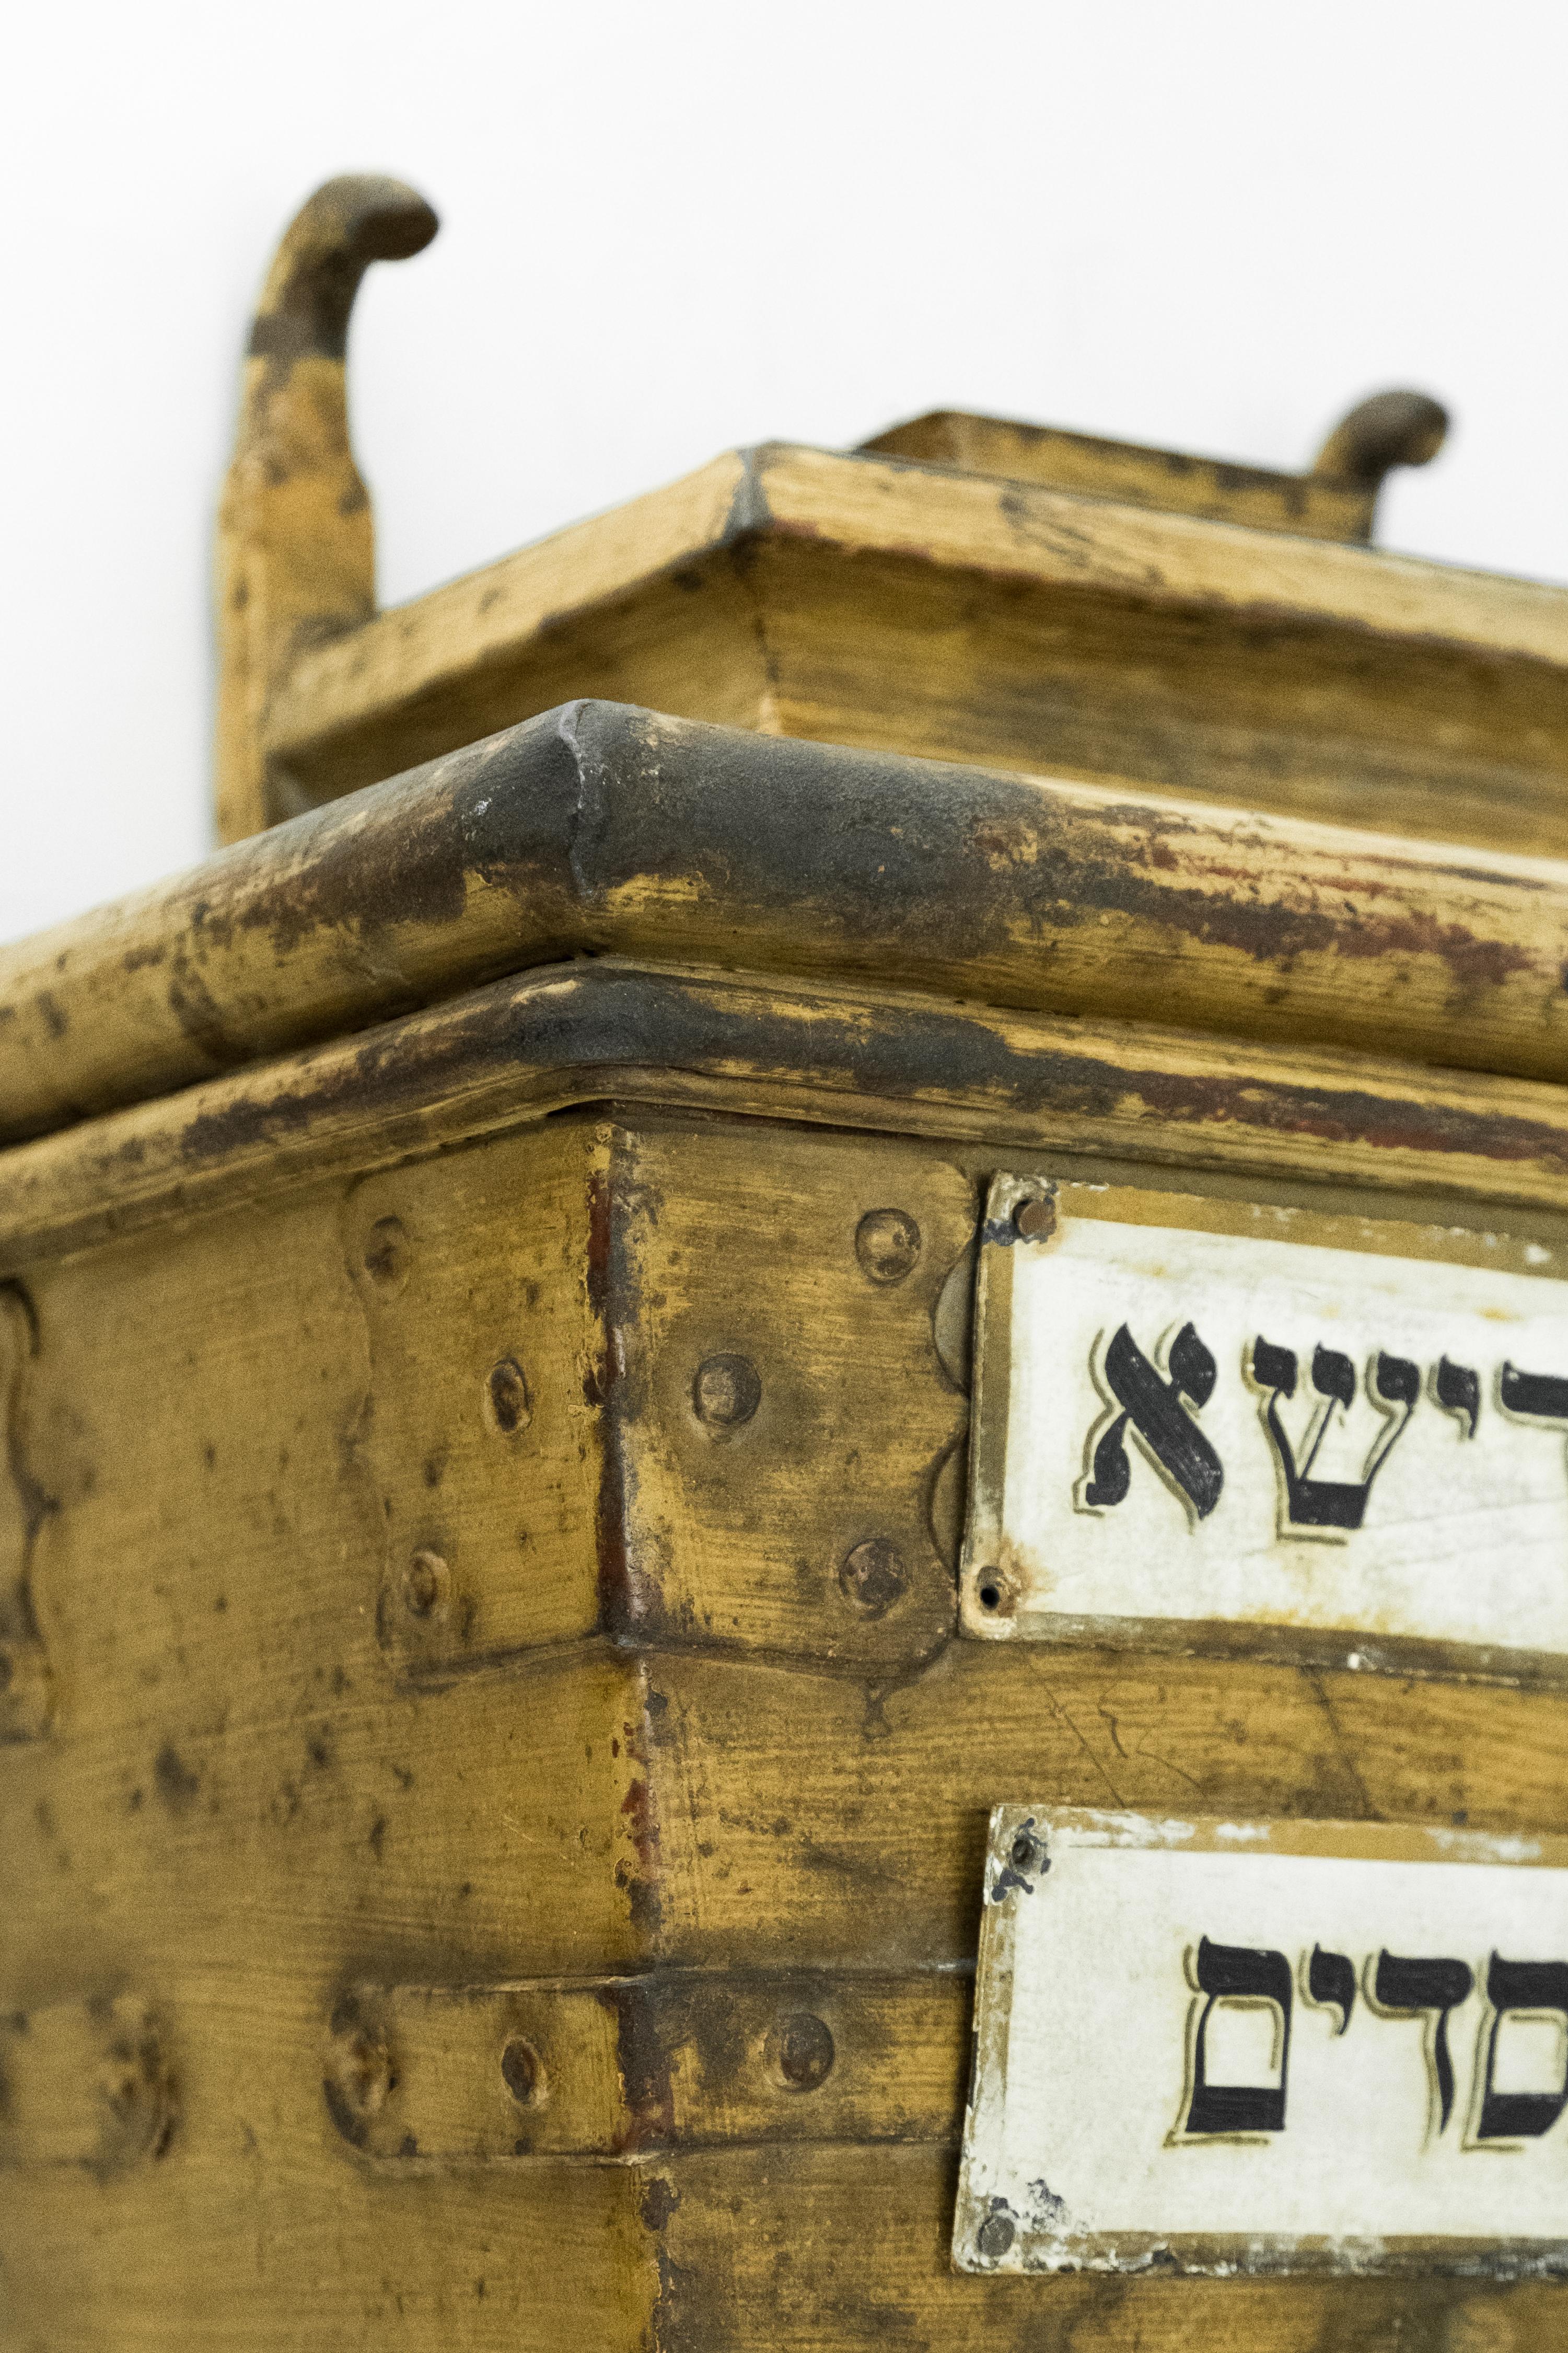 Großer handgefertigter eiserner Almosenbehälter, Ungarn, um 1850.
Die eiserne Tzedakah-Box wurde in der Mauer der ungarischen Synagoge installiert.
Auf der Vorderseite befinden sich zwei Metalltafeln mit der hebräischen Aufschrift 